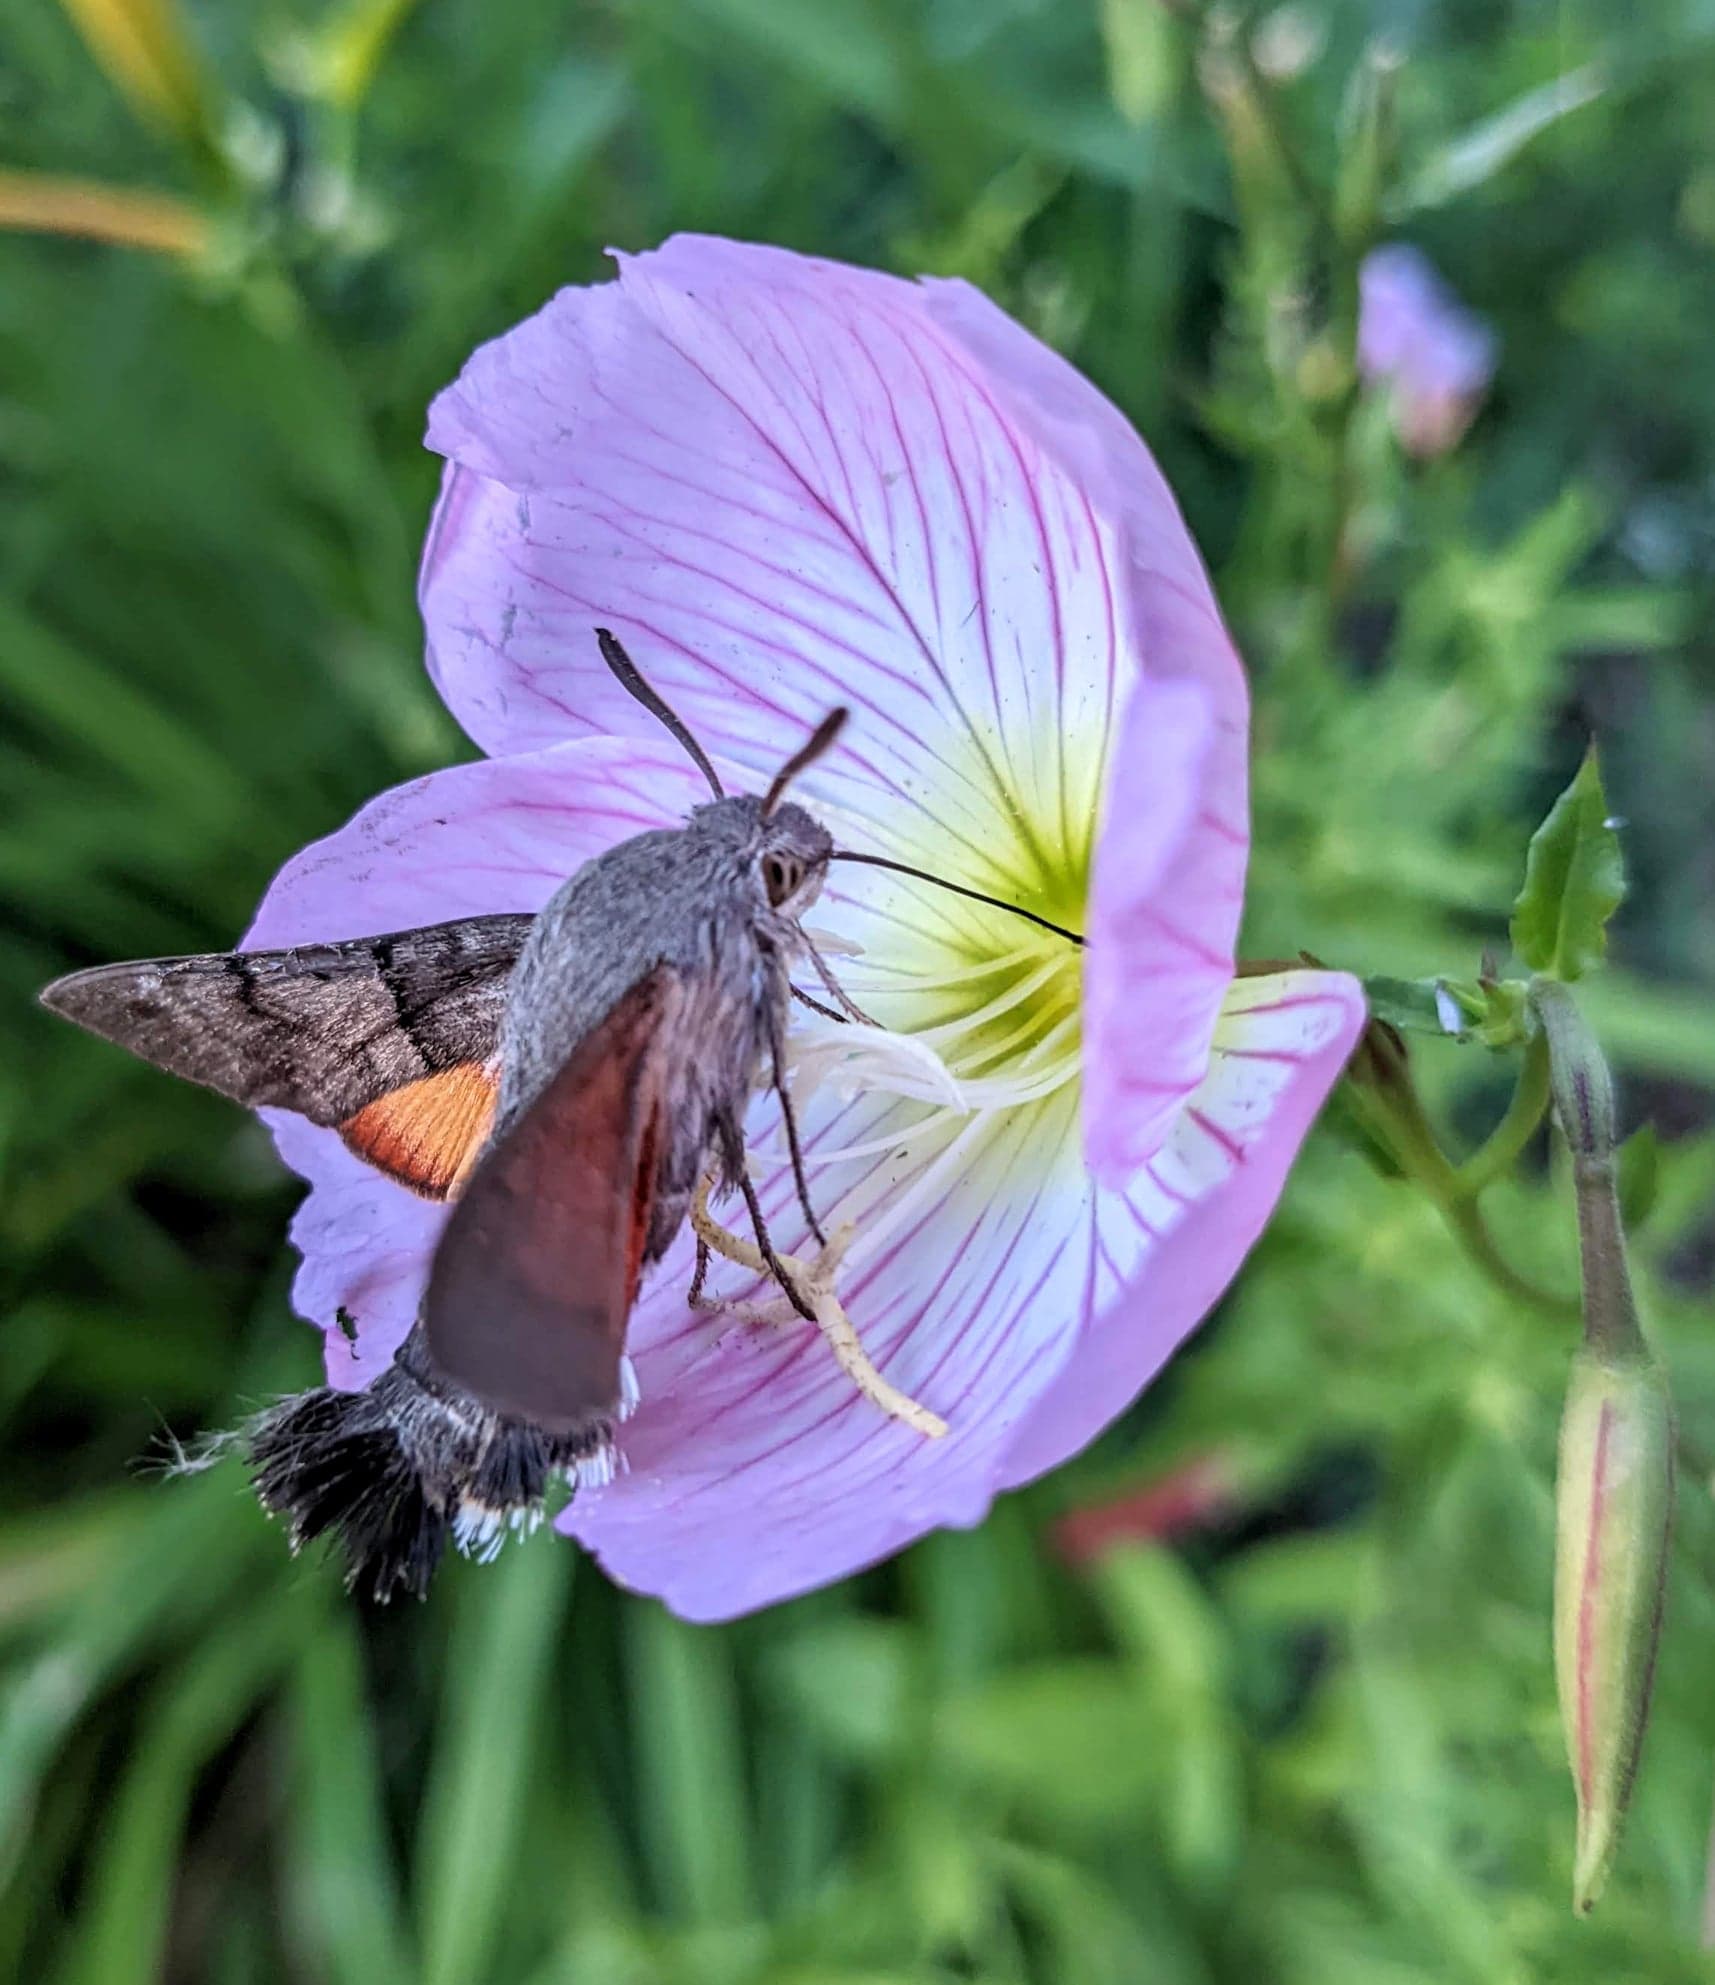 Sphinx colibri sur une onagre rose ( cette fleur est un piège pour ce papillon! Sa trompe reste coincée dedans! Pour le sauver, il faut enlever les pétales, bien tenir la hampe, et si c'est possible tirer délicatement la trompe, ou ouvrir la hampe).